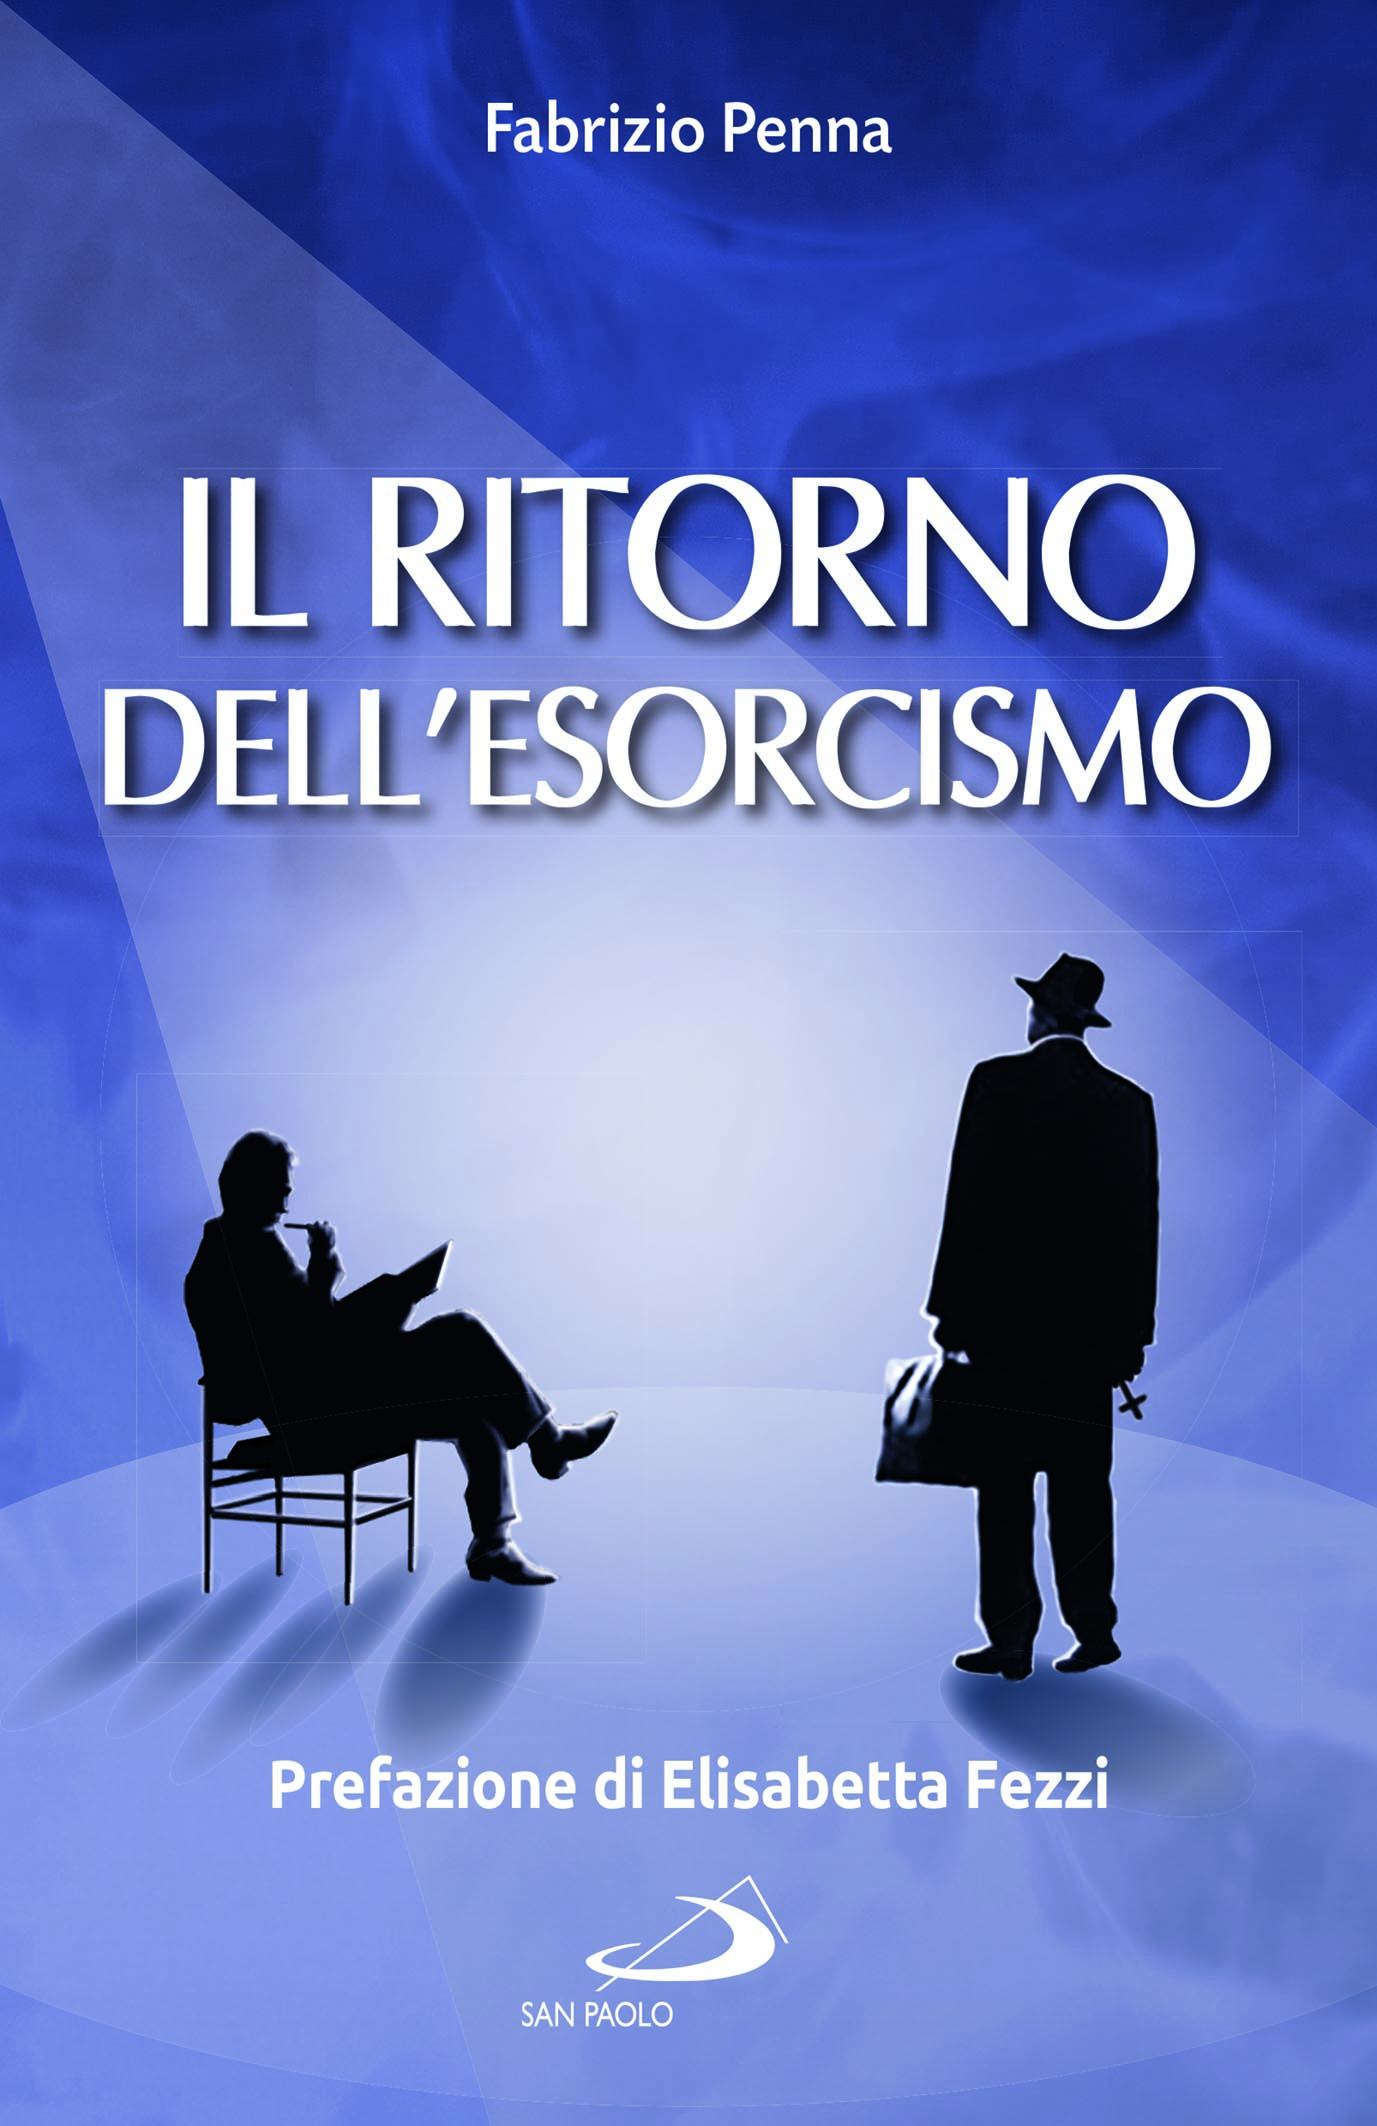 Il_ritorno_dell_esorcismo_cover.jpg